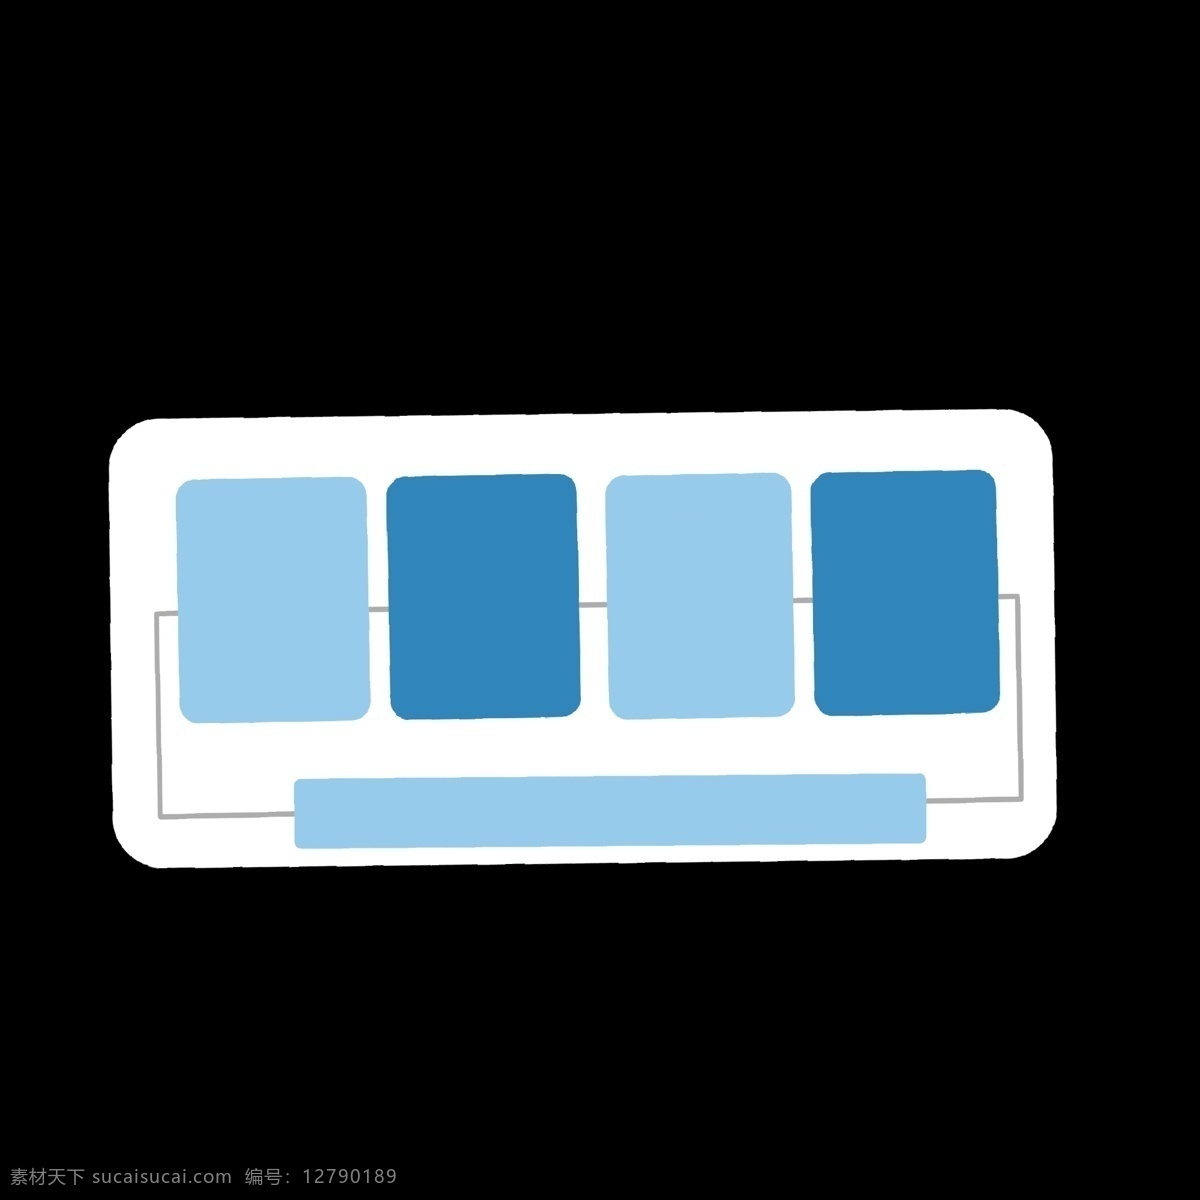 蓝色 渐变 长方形 分类 图标 线条 分别 类目表 不同 区别 区分开 ppt专用 卡通 简单 简约 简洁